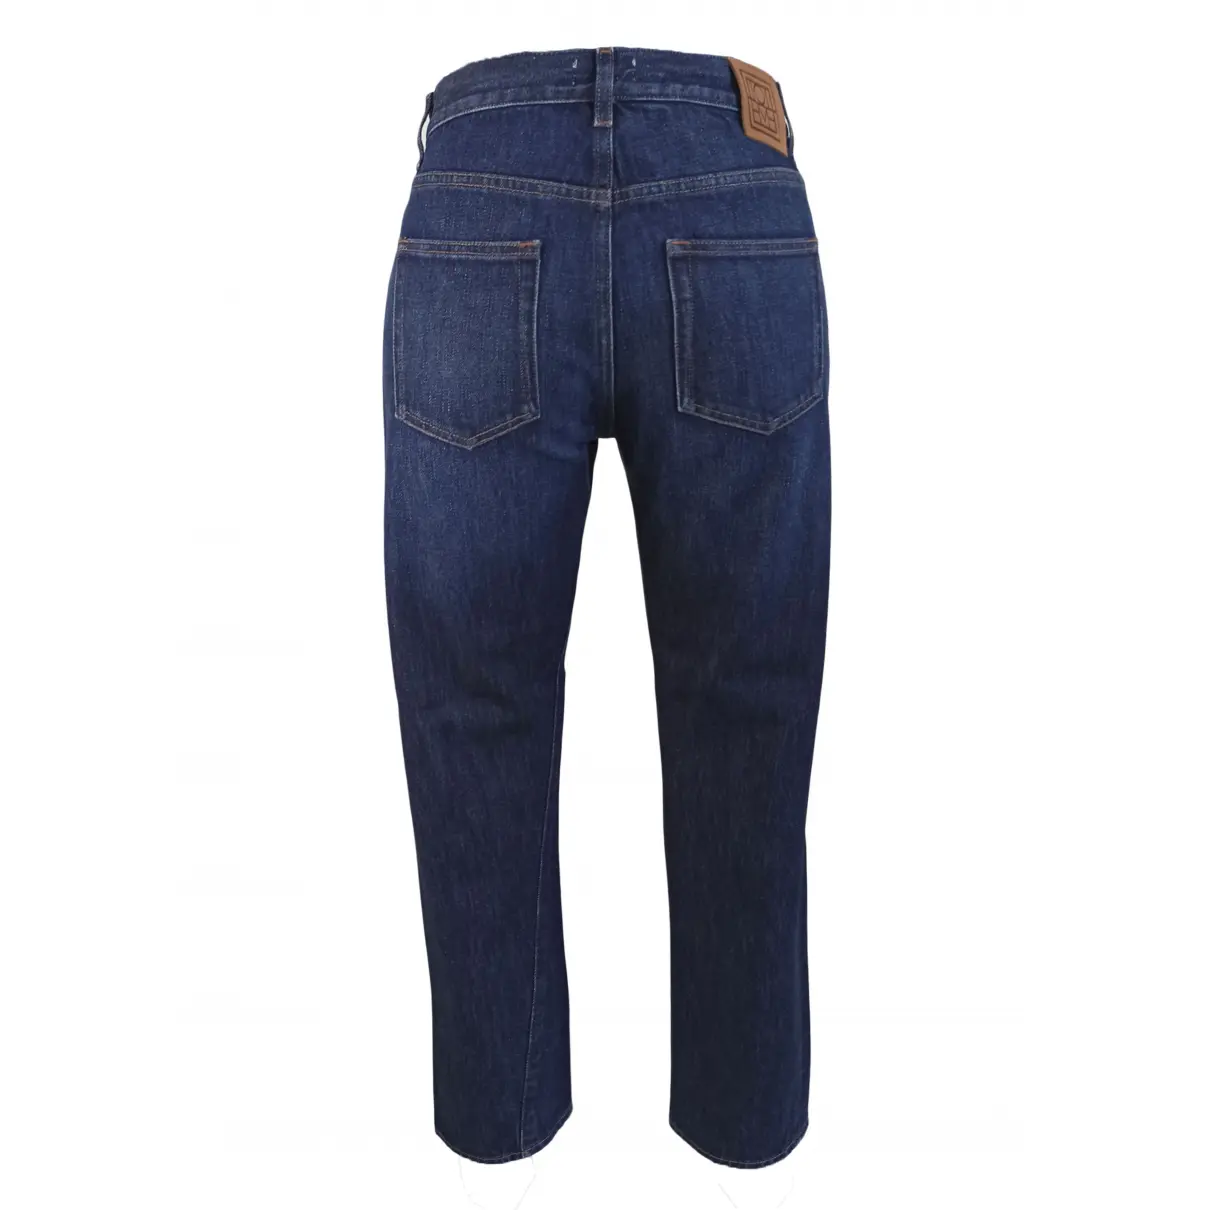 Buy Totême Original large jeans online